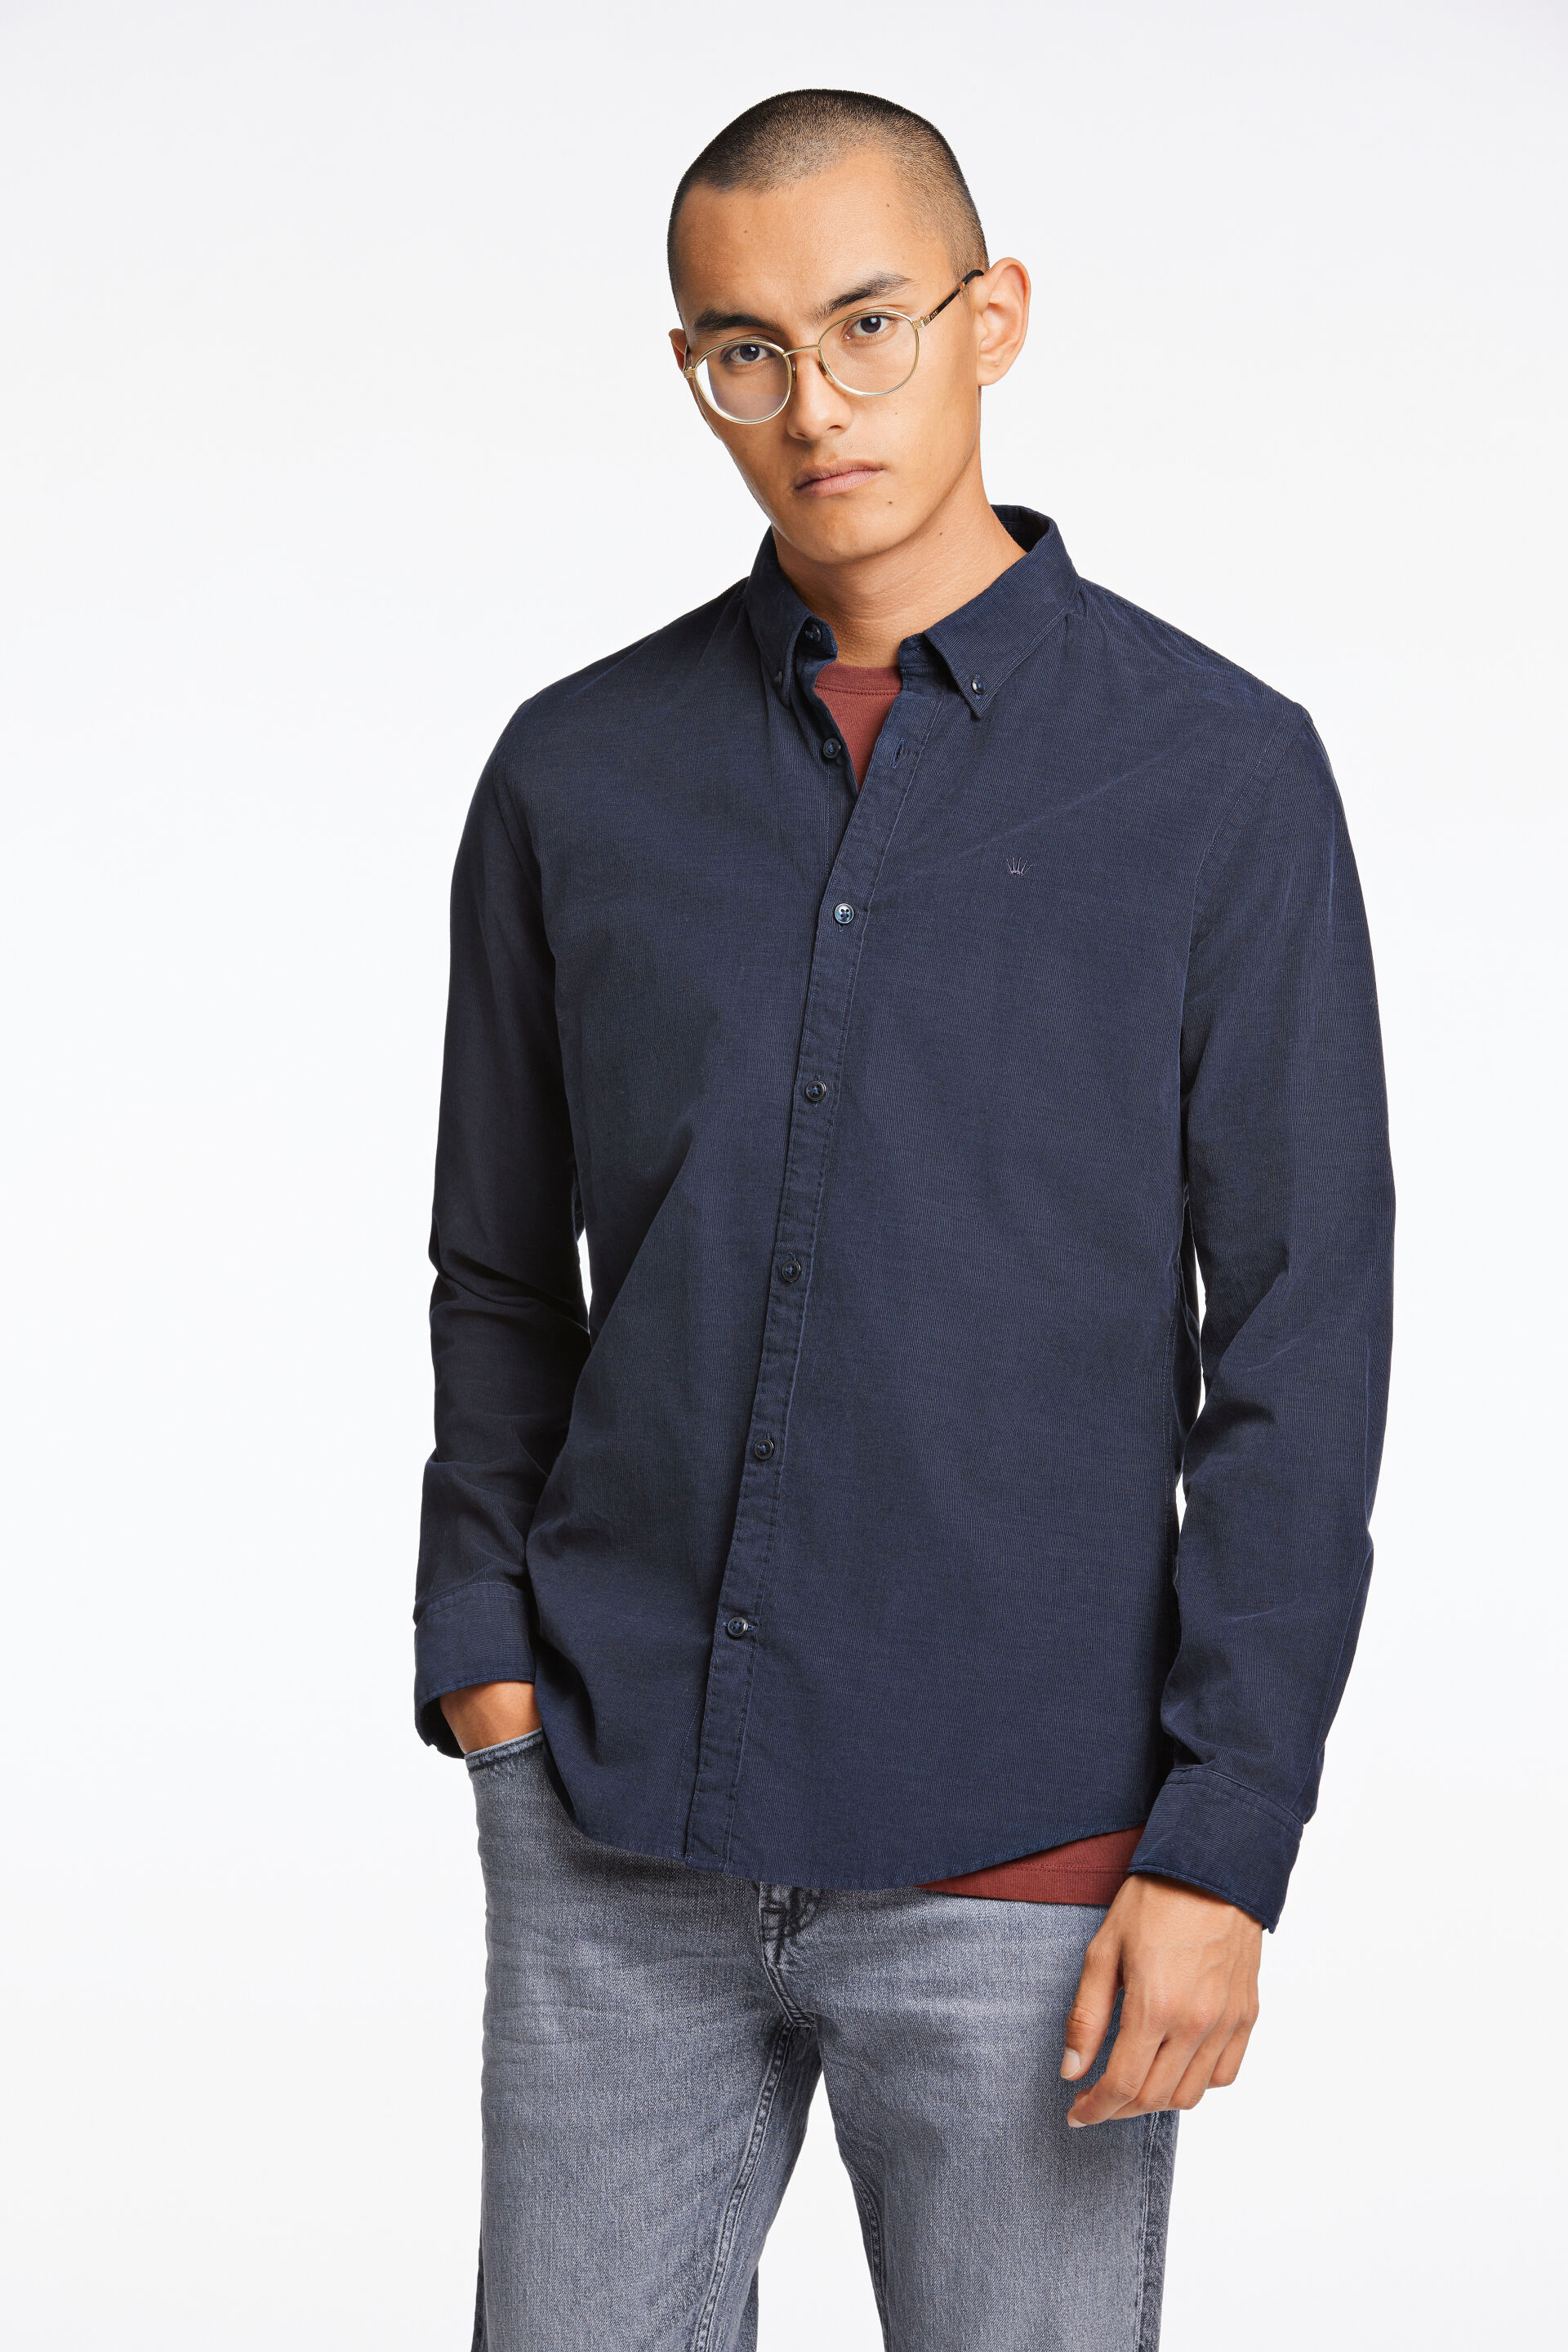 Fløjlsskjorte Fløjlsskjorte Blå 60-205016